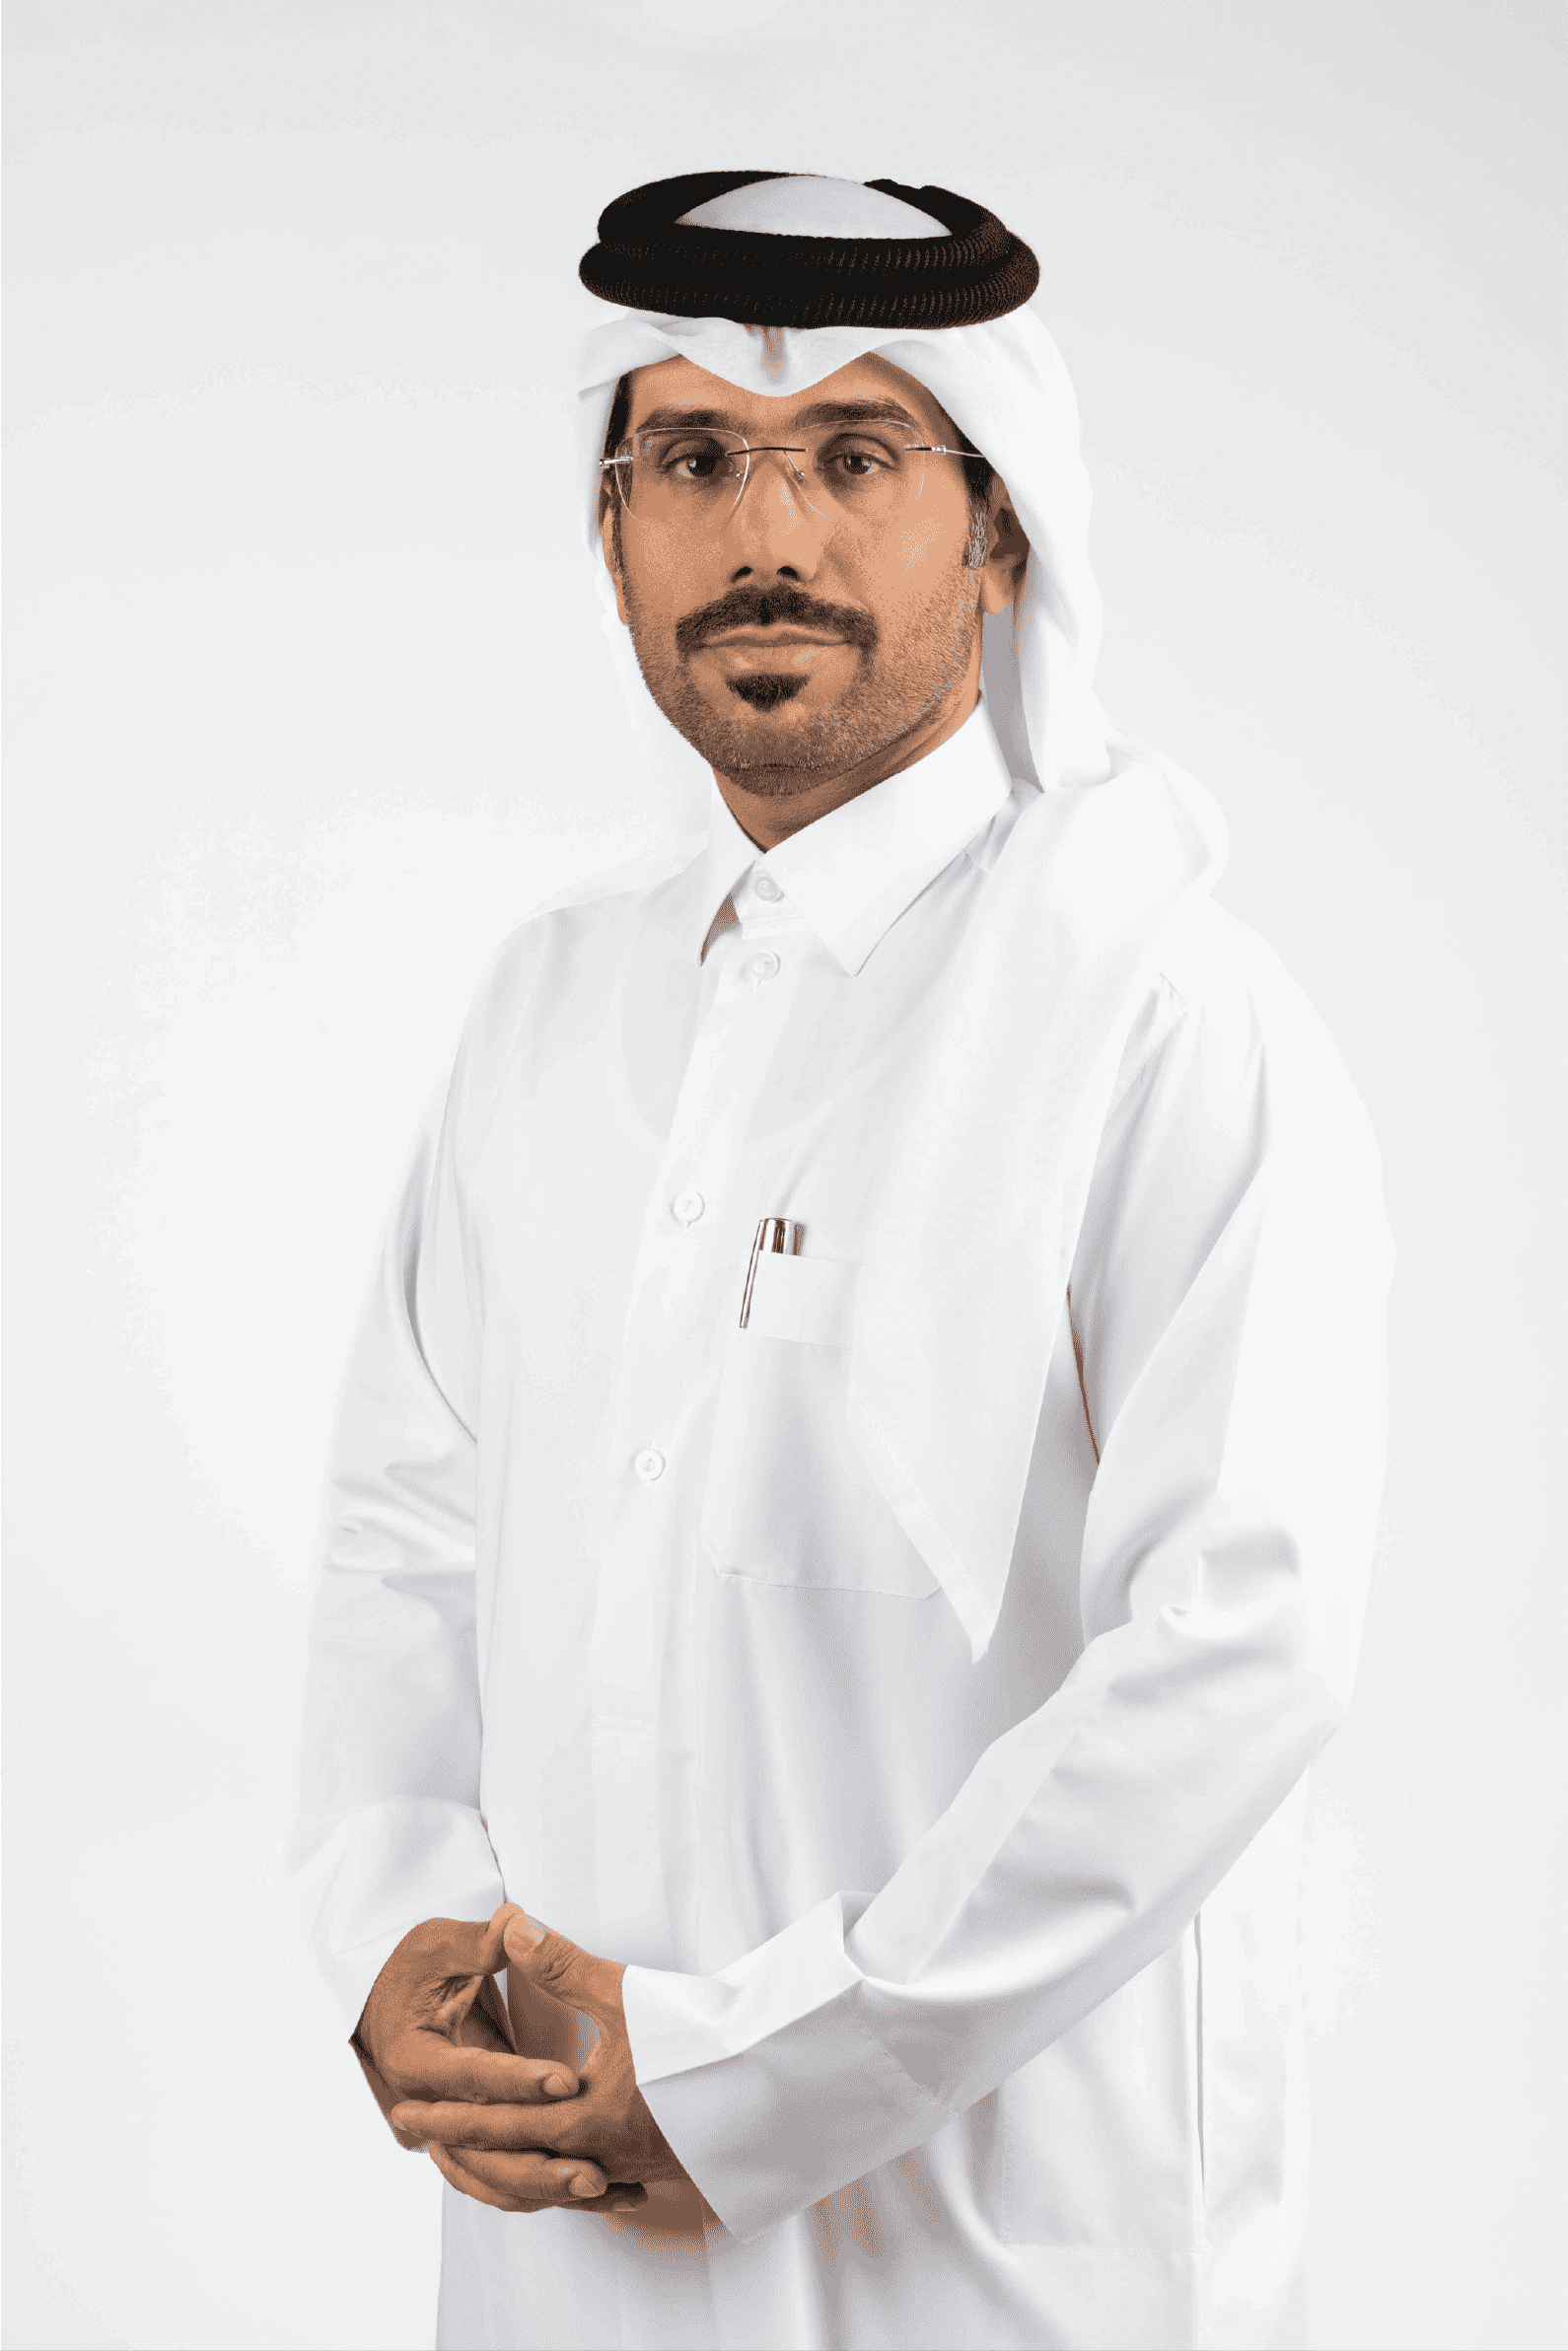 Mohammed Al Dosari